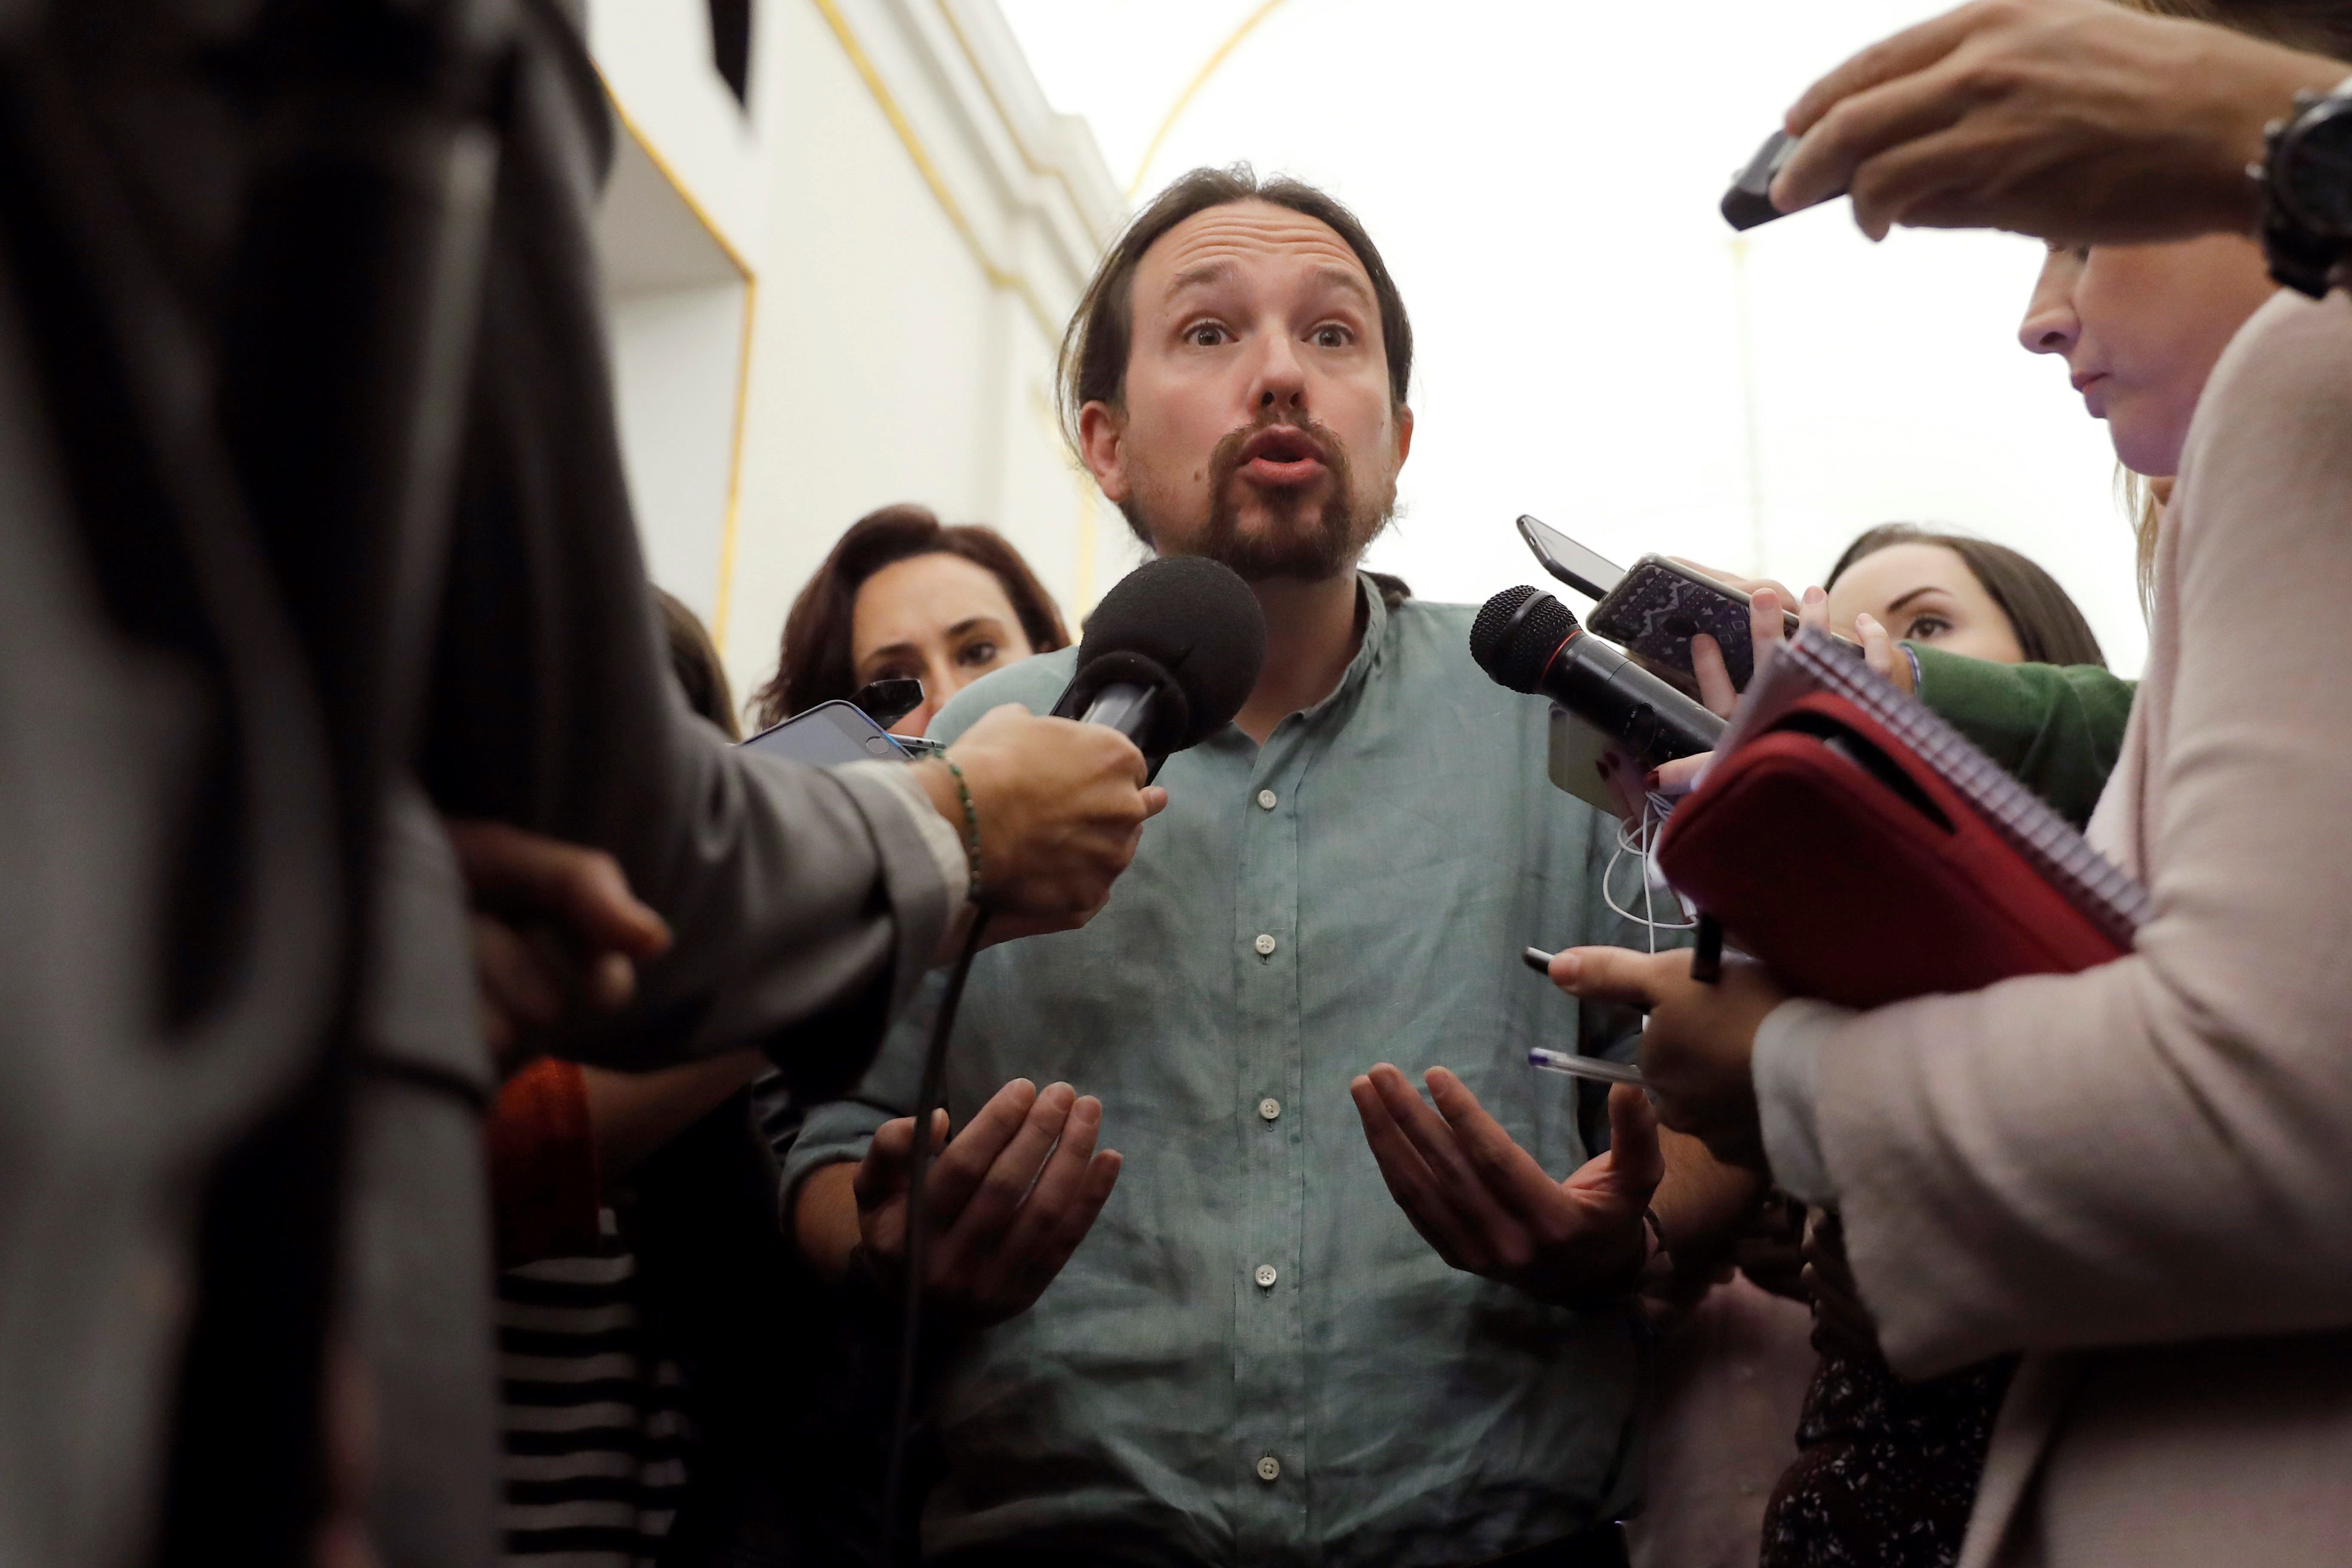 Iglesias: "Em fa vergonya que al meu país s'empresoni opositors"